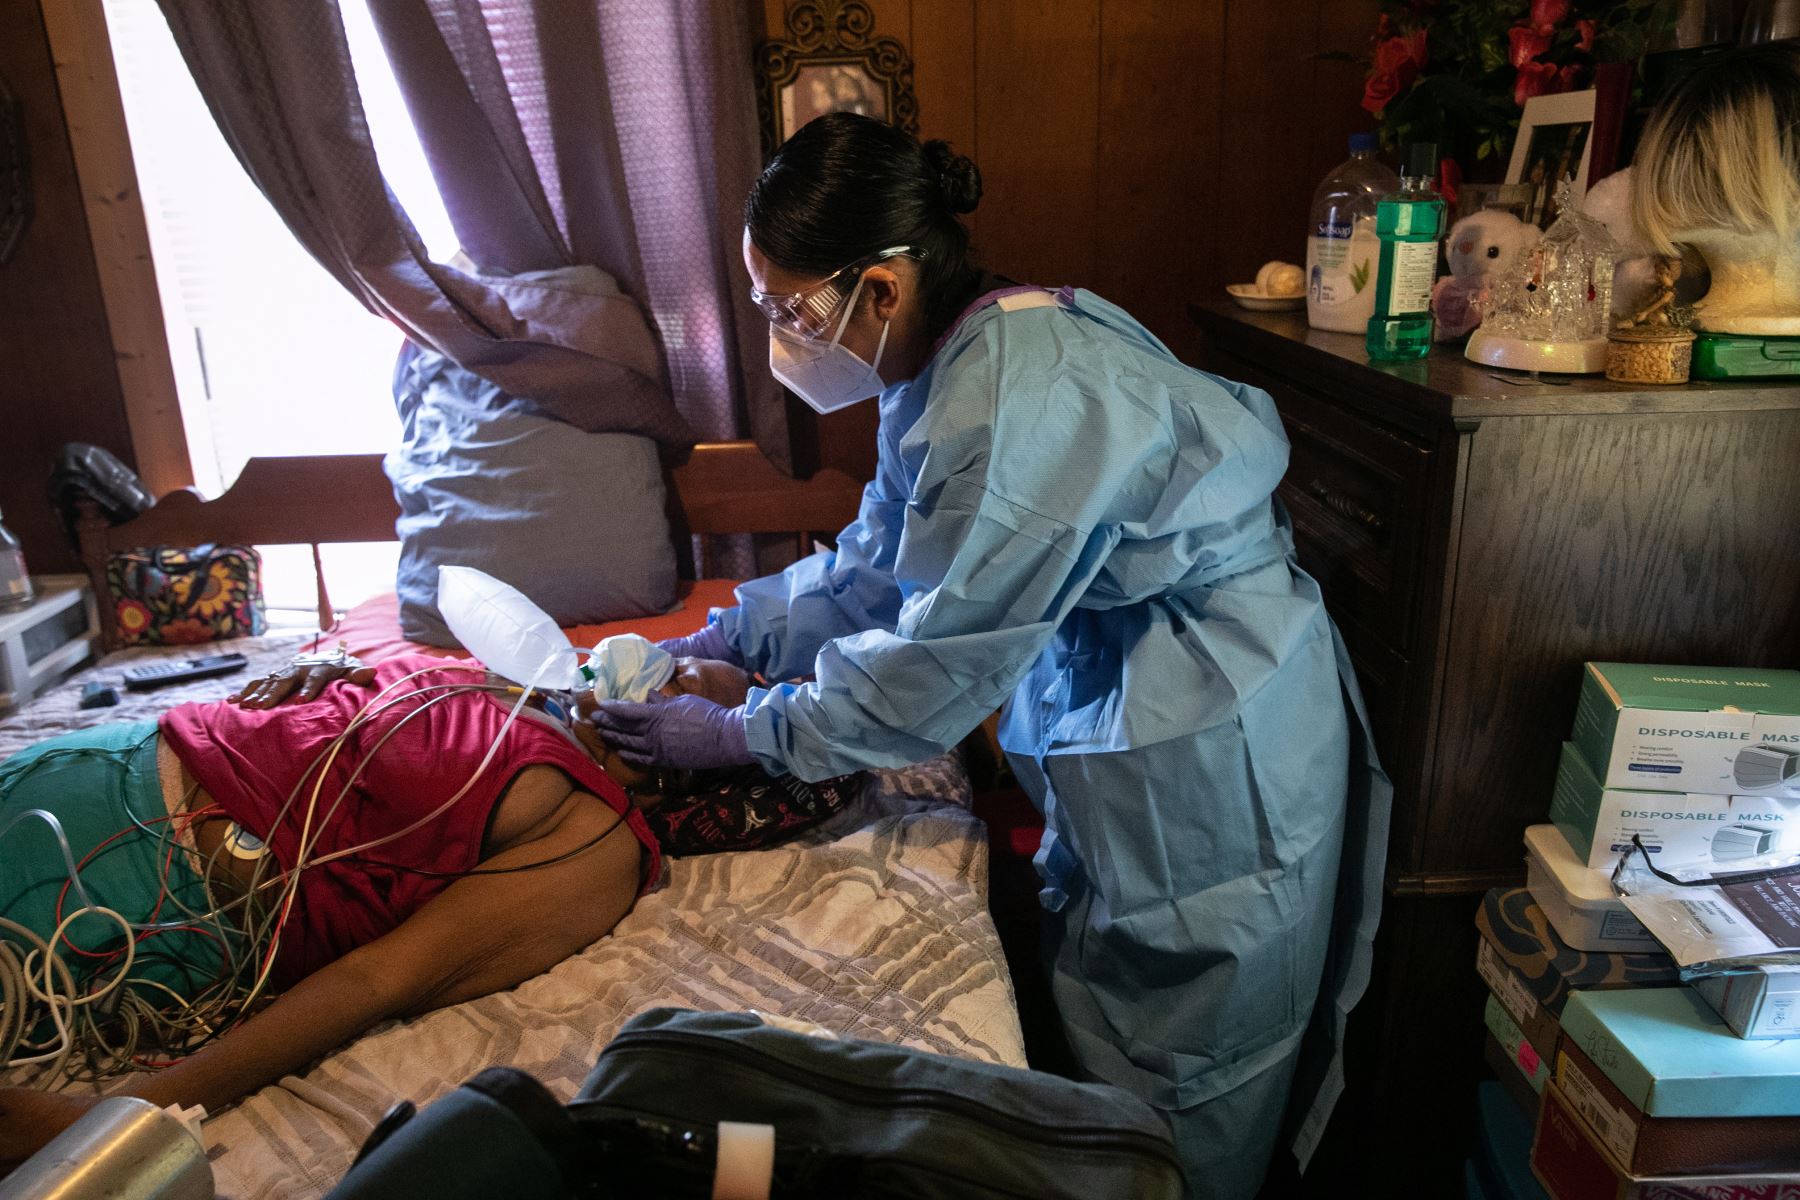 Un médico trata a una mujer que sufre de posibles síntomas de Covid-19 antes de transportarla a un hospital, el 12 de agosto de 2020 en Houston, Texas.